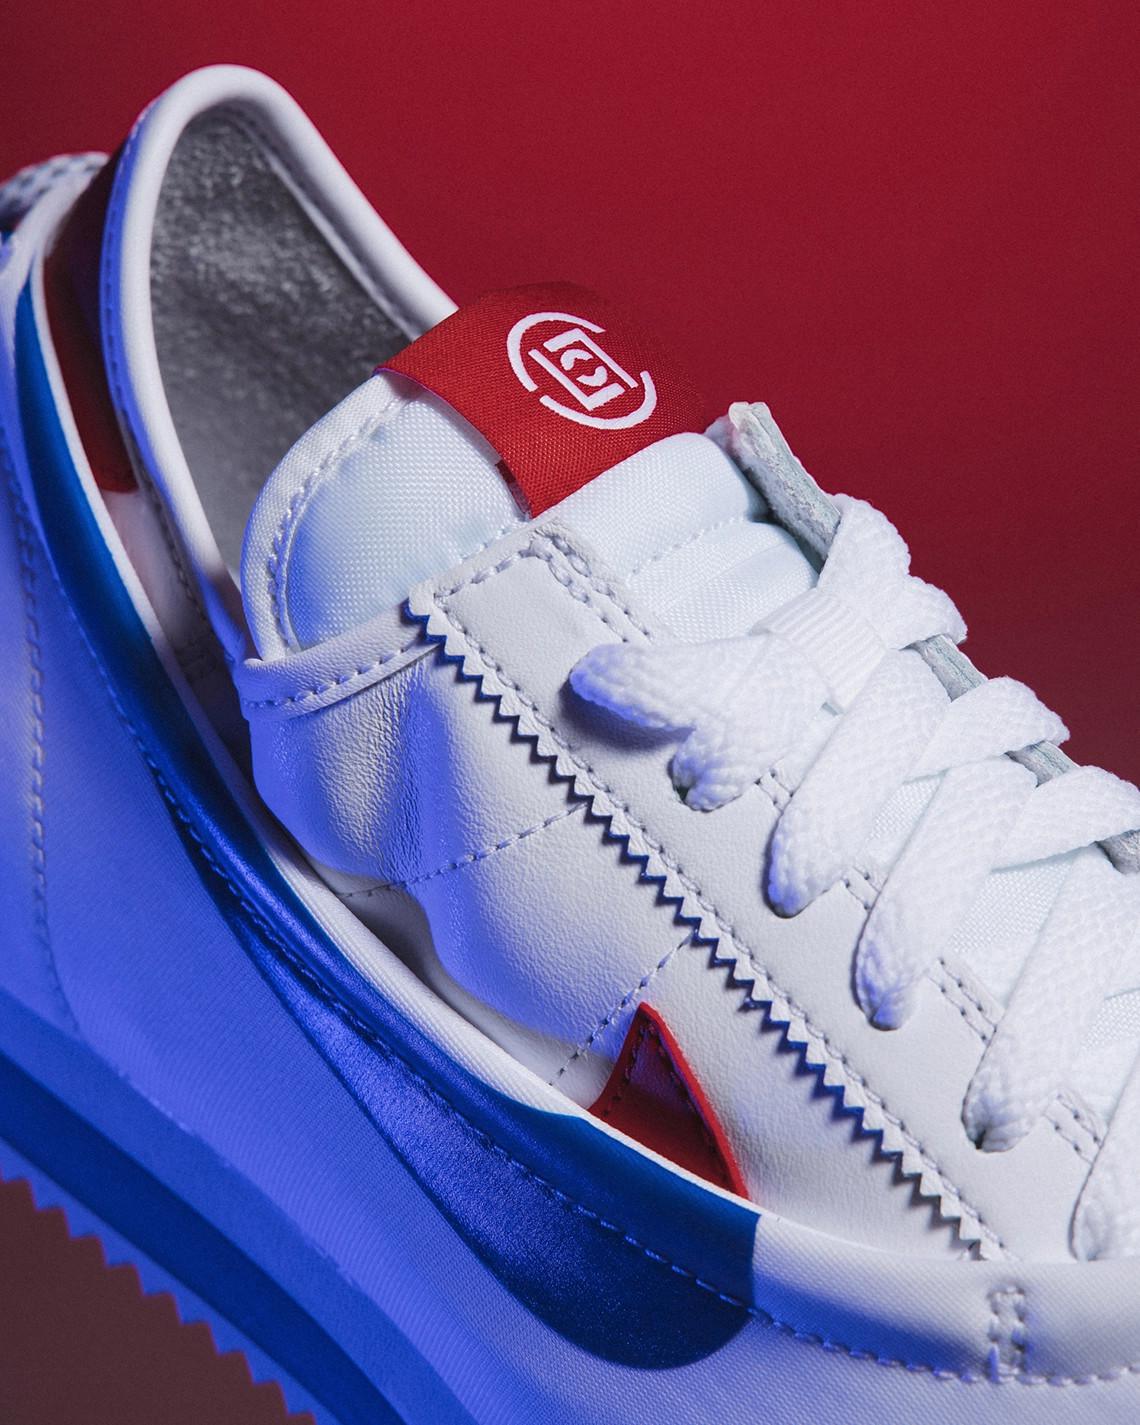 CLOT clôt la trilogie Nike "CLOTEZ" avec l'intemporel coloris rouge/blanc/bleu